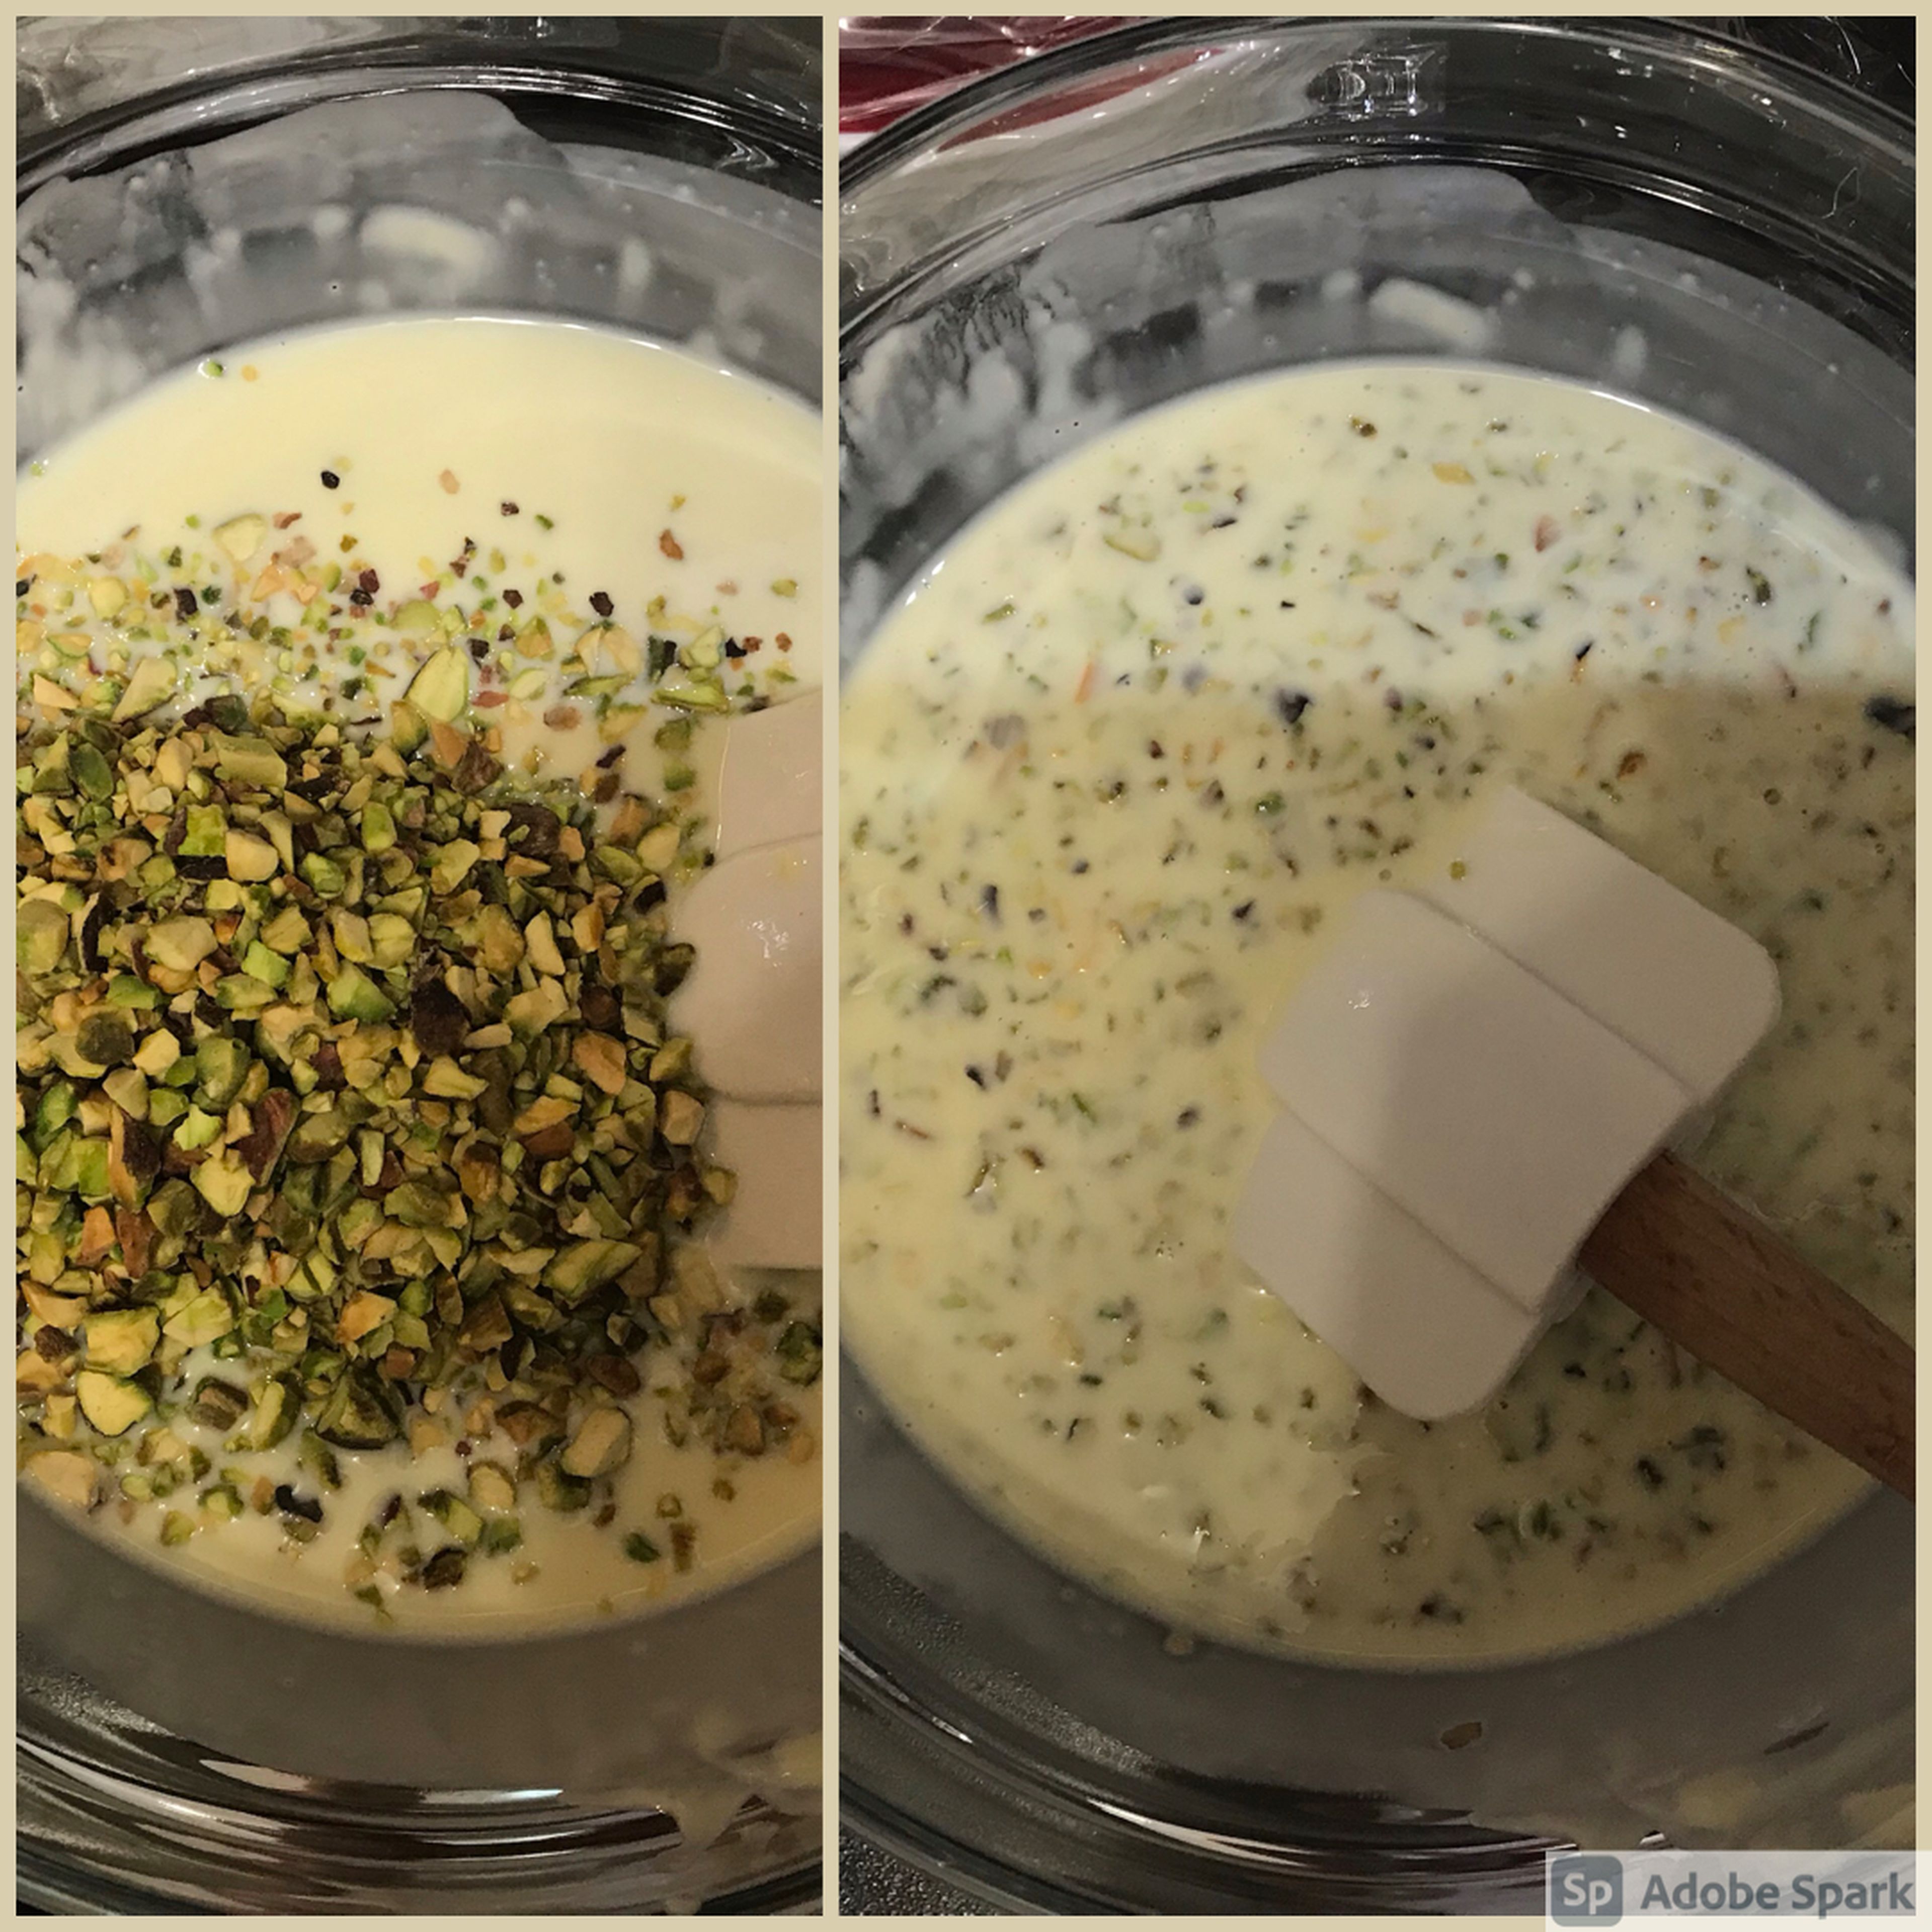 Stir pistachios through white chocolate. Set aside to cool to 35-40C.